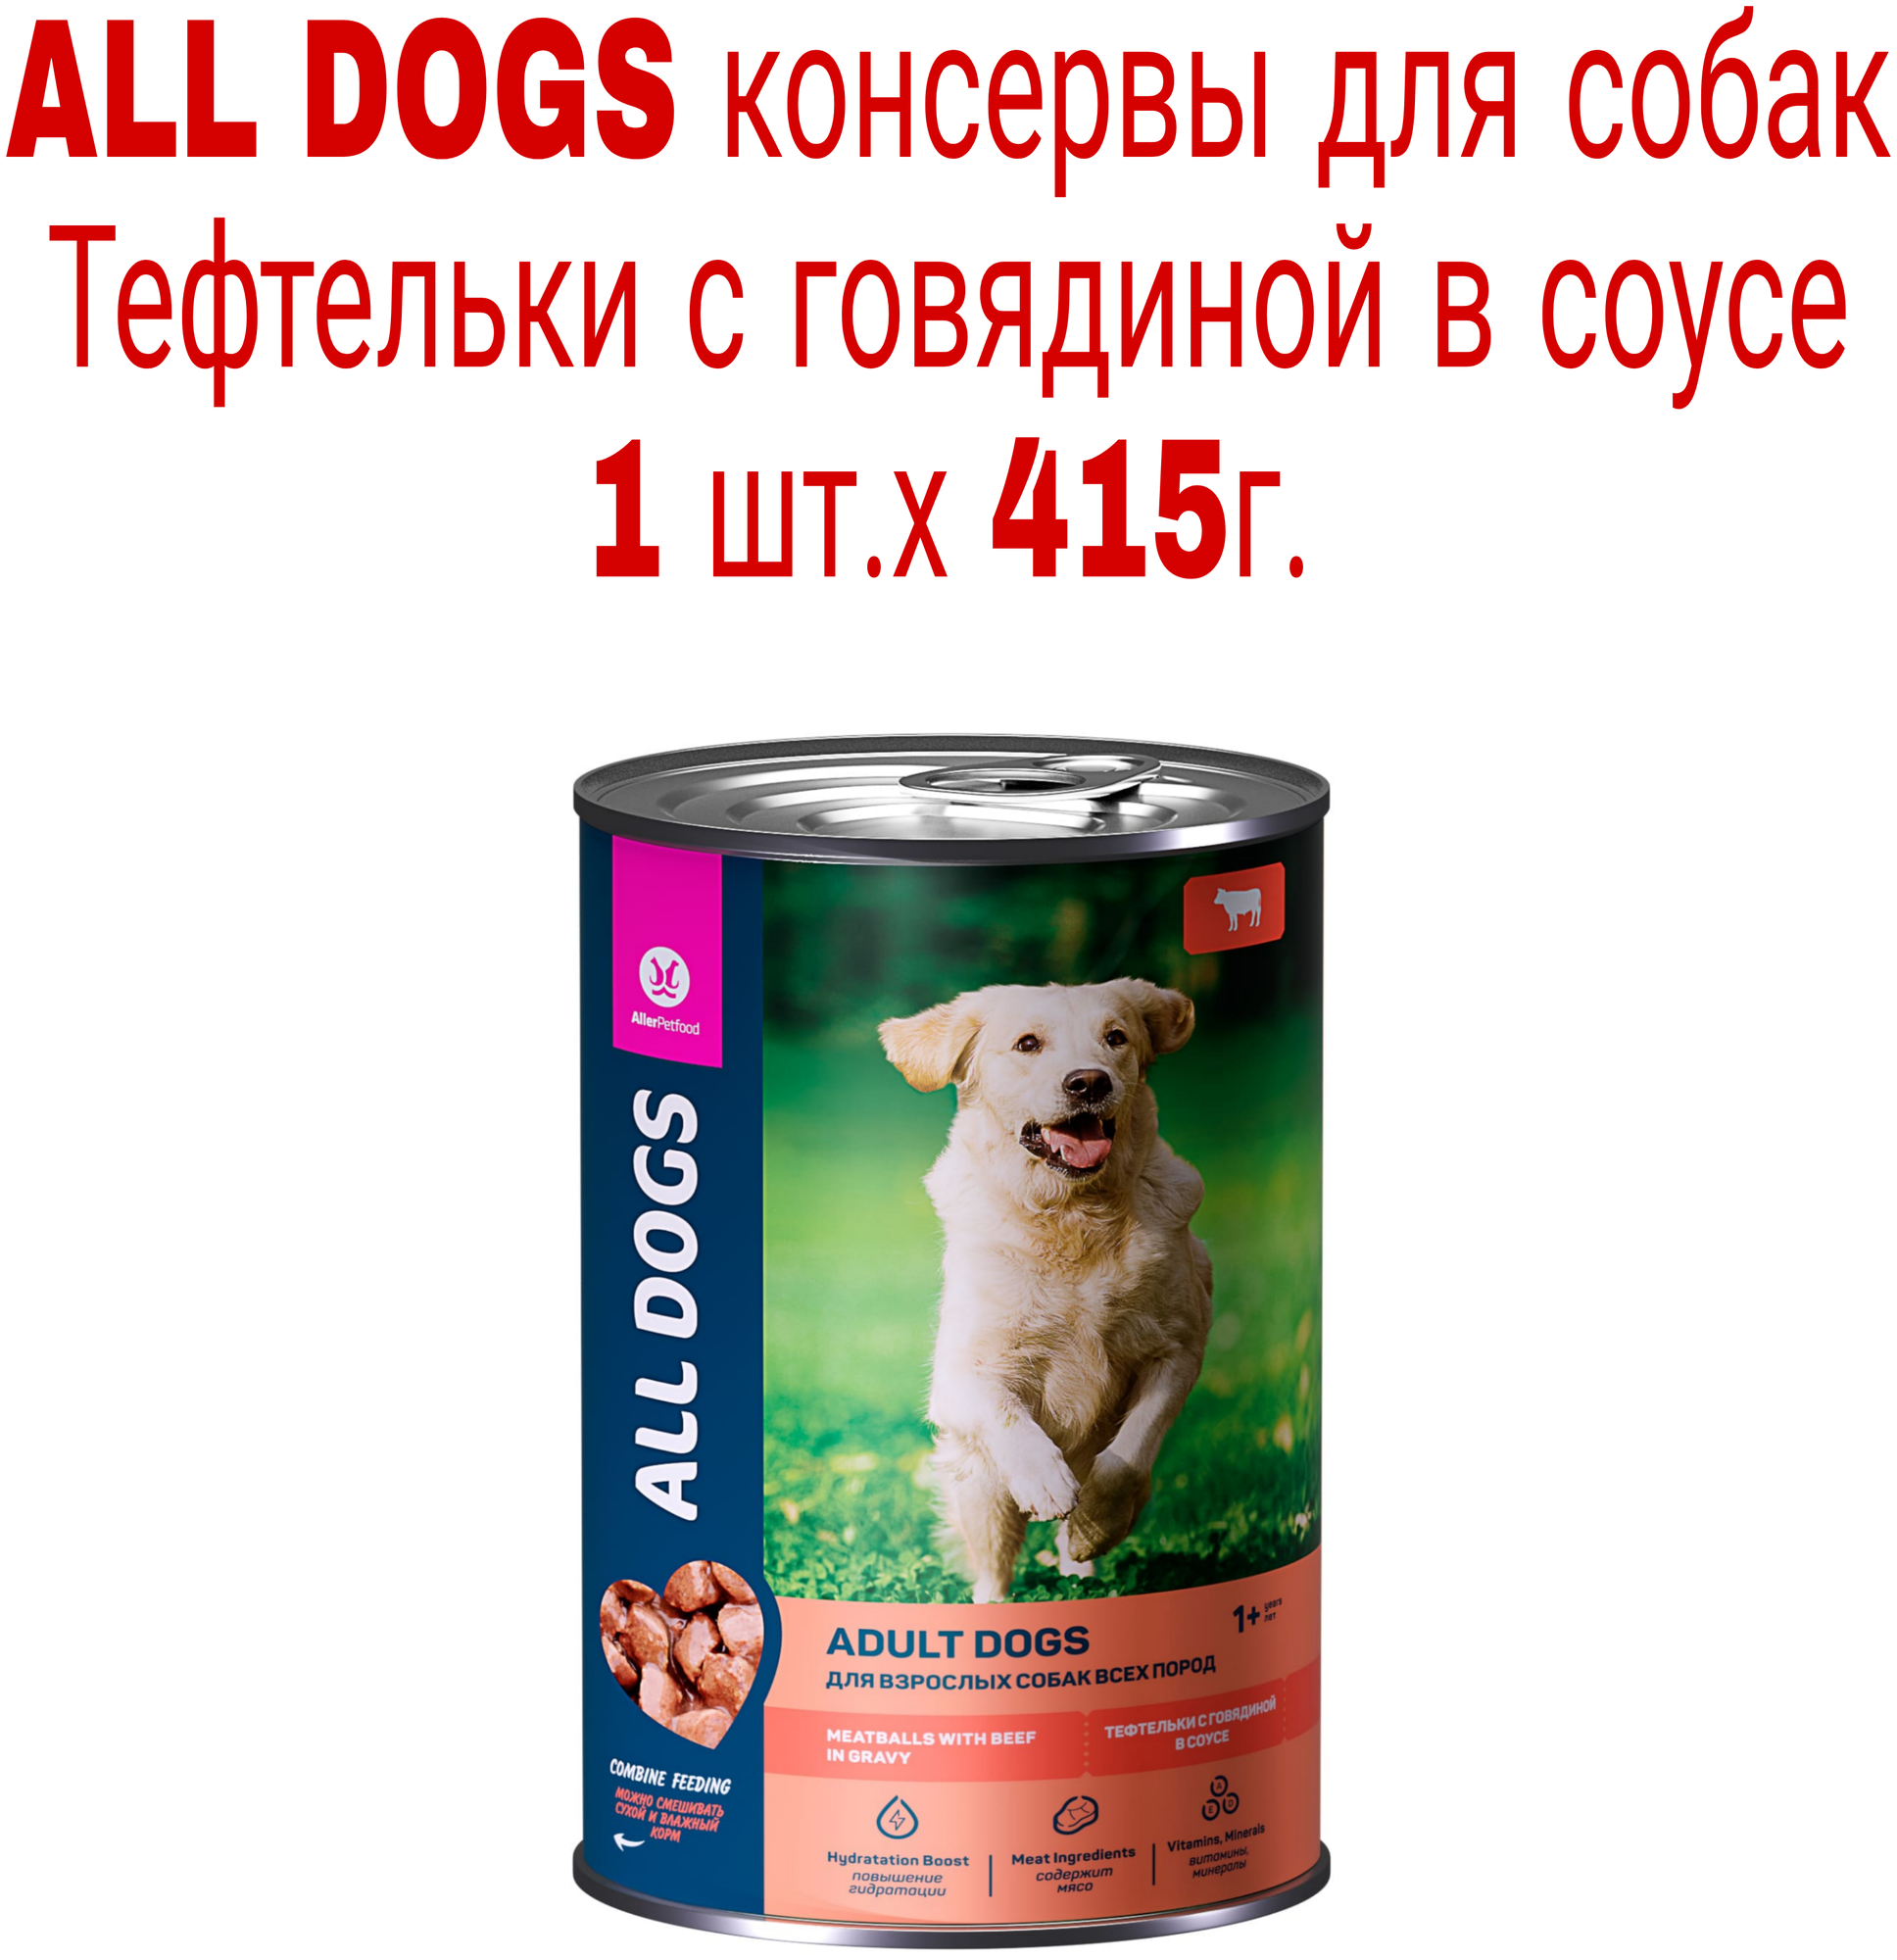 ALL DOGS консервы для собак тефтельки из Говядины в соусе 415г